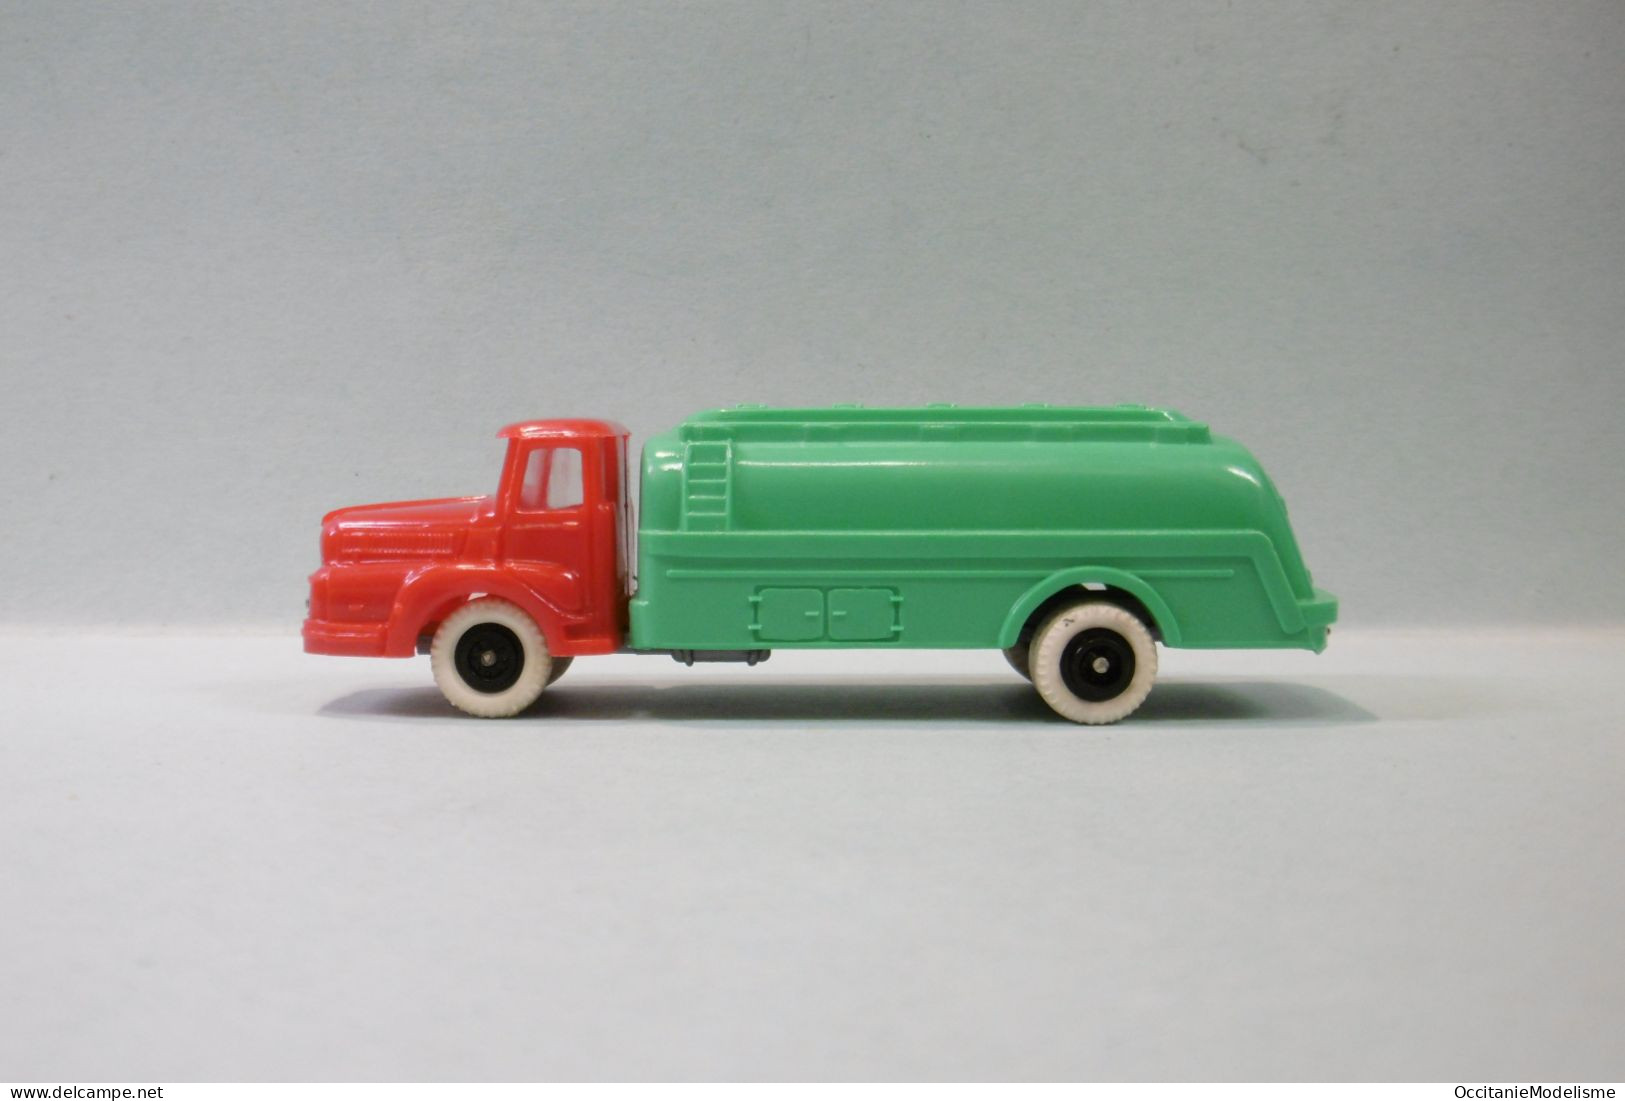 Clé - Camion UNIC IZOARD rouge citerne vert HO 1/87 1/90